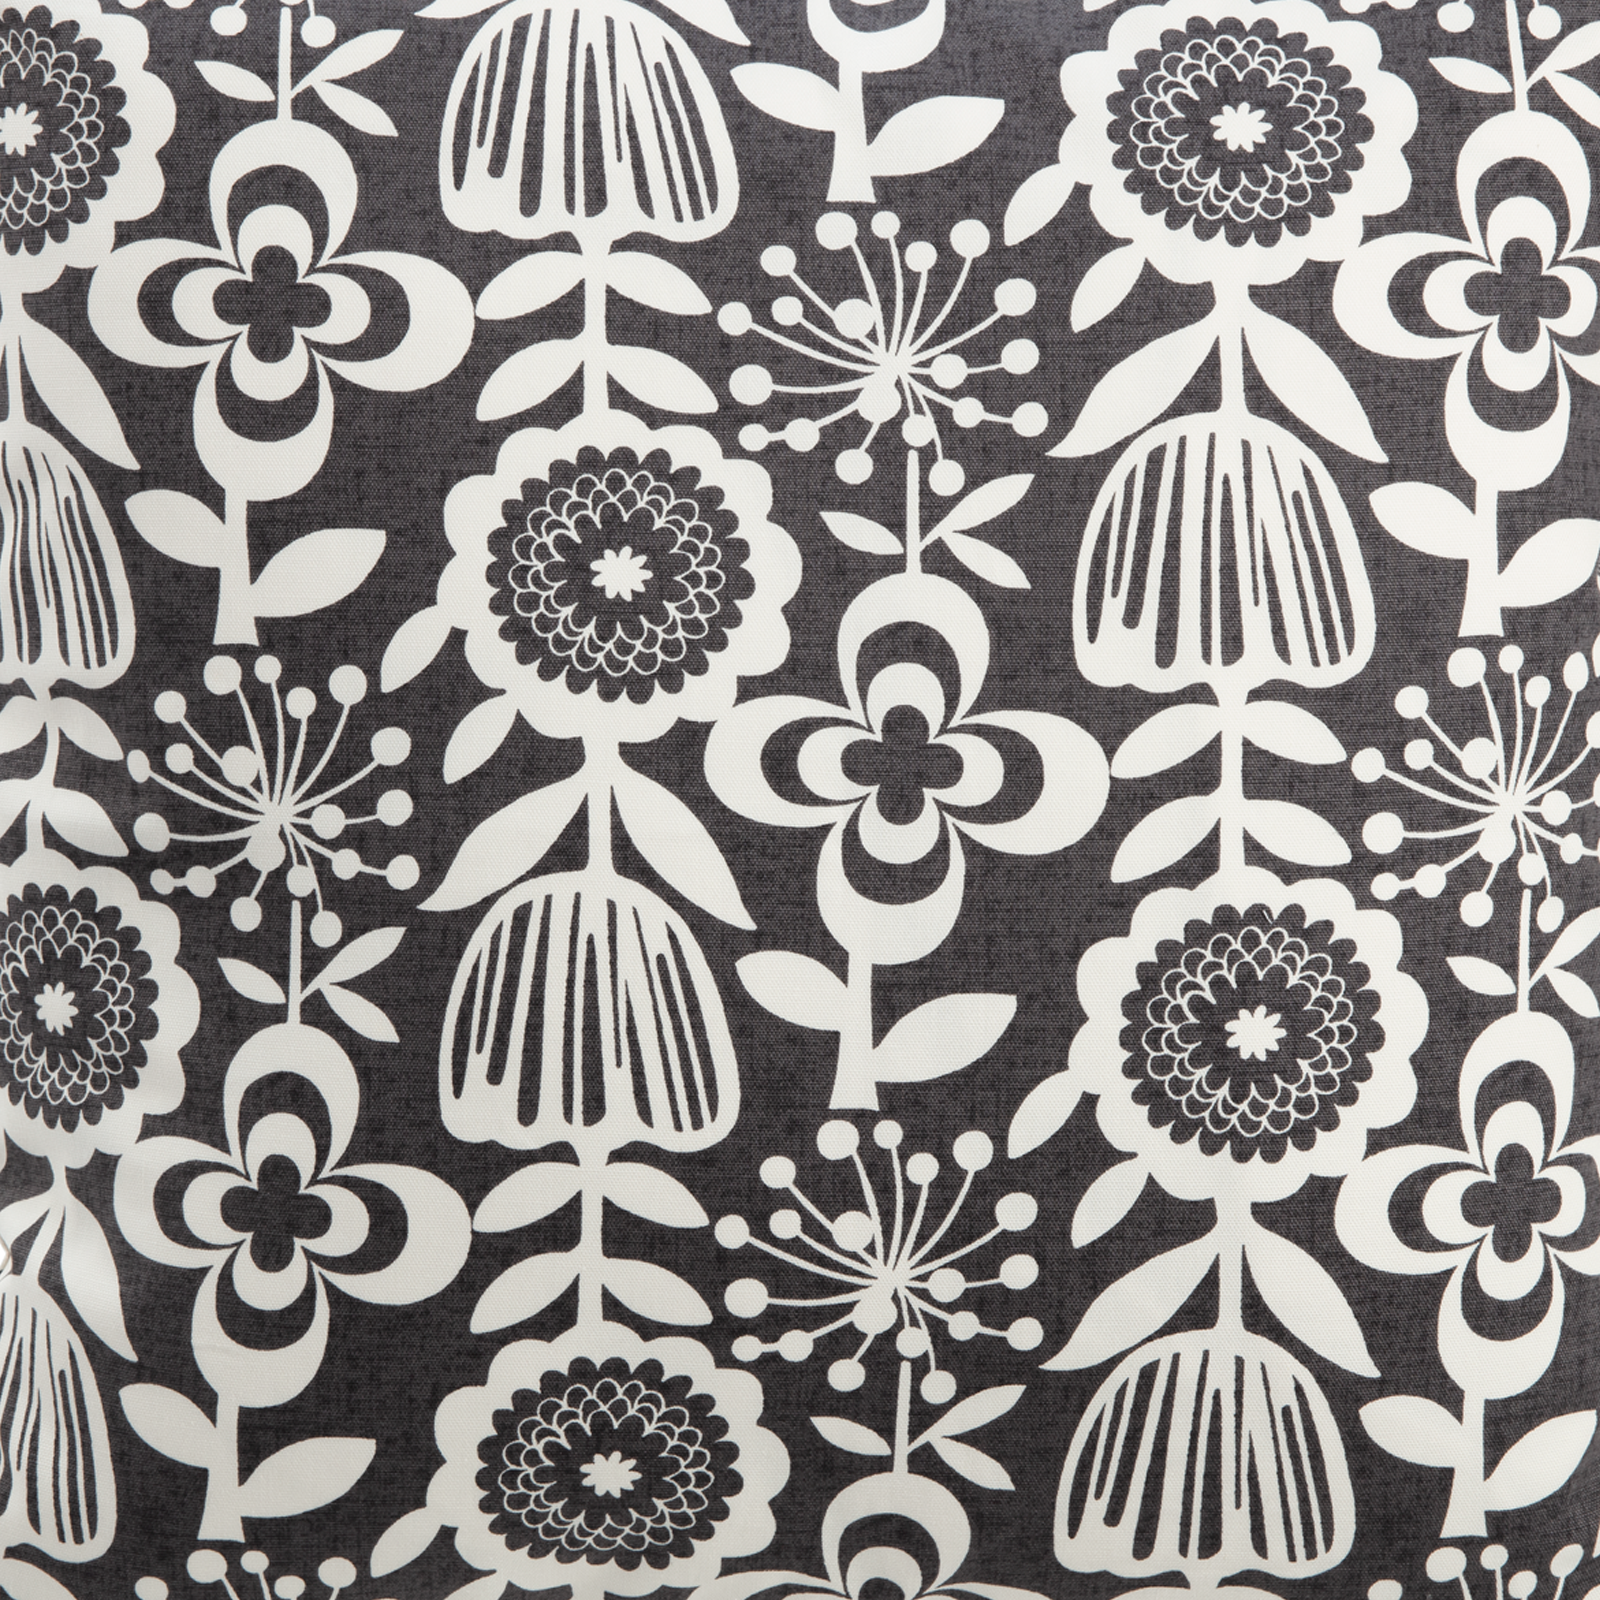 Imported Japanese Fabric - Saku Black_Fabric_Imported from Japan_100% Cotton_Japanese Sleep System